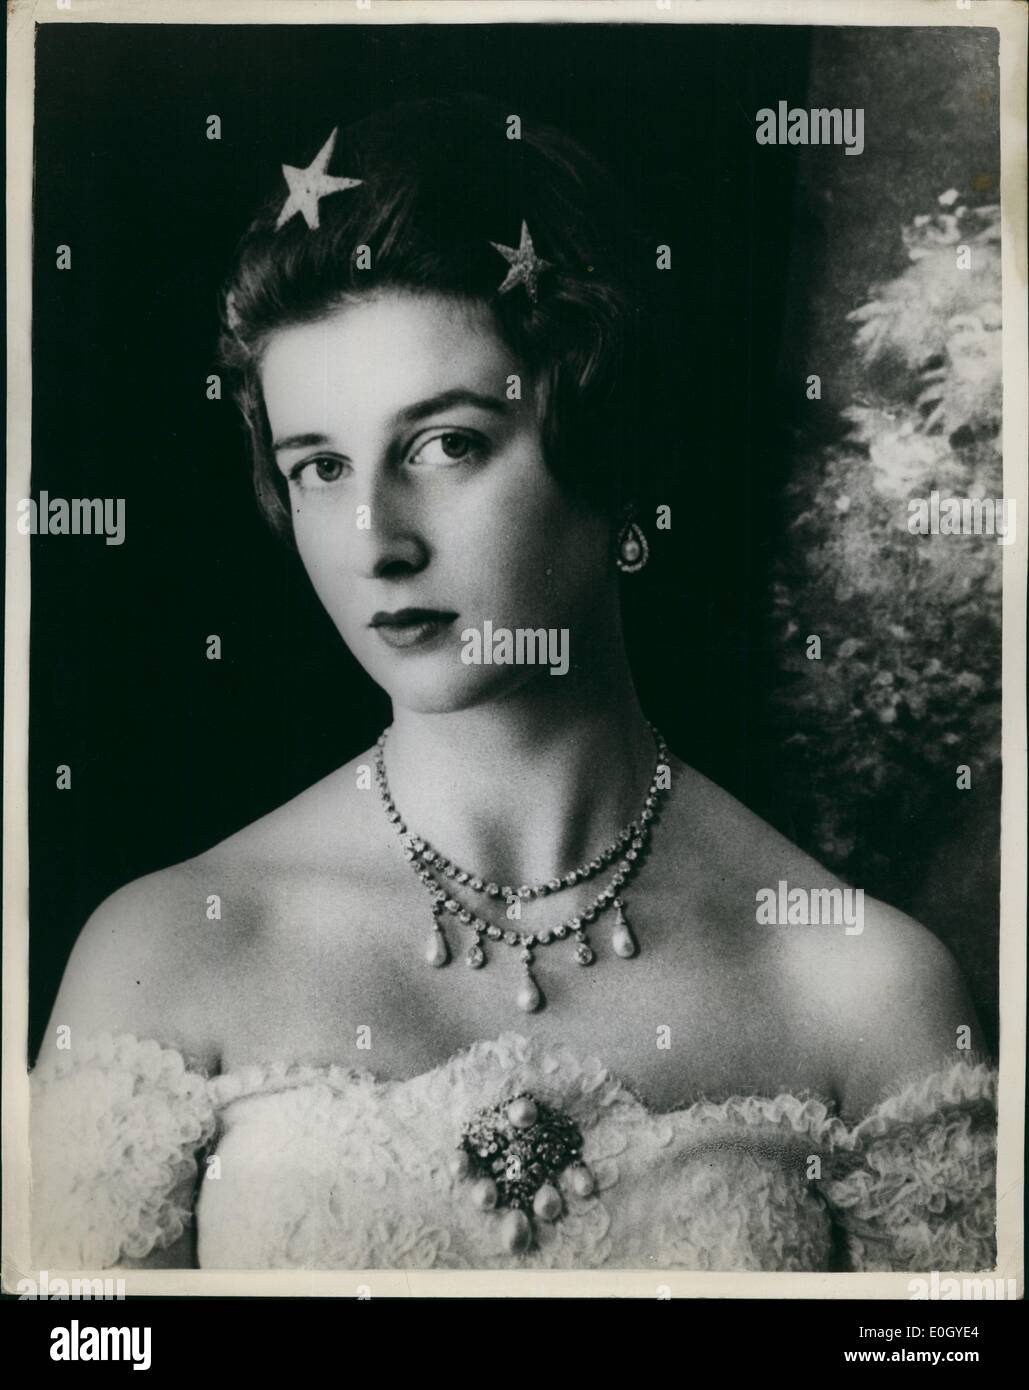 Dez. 12, 0000 - Sterne Weihnachten für eine Prinzessin. Fotos zeigt H.R.H Prinzessin Alexandra von Kent, wer feiert ihren 23. Geburtstag am Weihnachtstag, 25. Dezember - glitzernde Sternen in ihrem Haar für dieses Portrait von Cecil Beaton trägt. Die Prinzessin, fotografiert in ihrem Londoner Haus, Kensington Palace, trägt auch ein Diamant und Perle Ohrringe, Halskette und Brosche. Ihr Kleid ist weißer Spitze. (genaues Datum unbekannt) Stockfoto